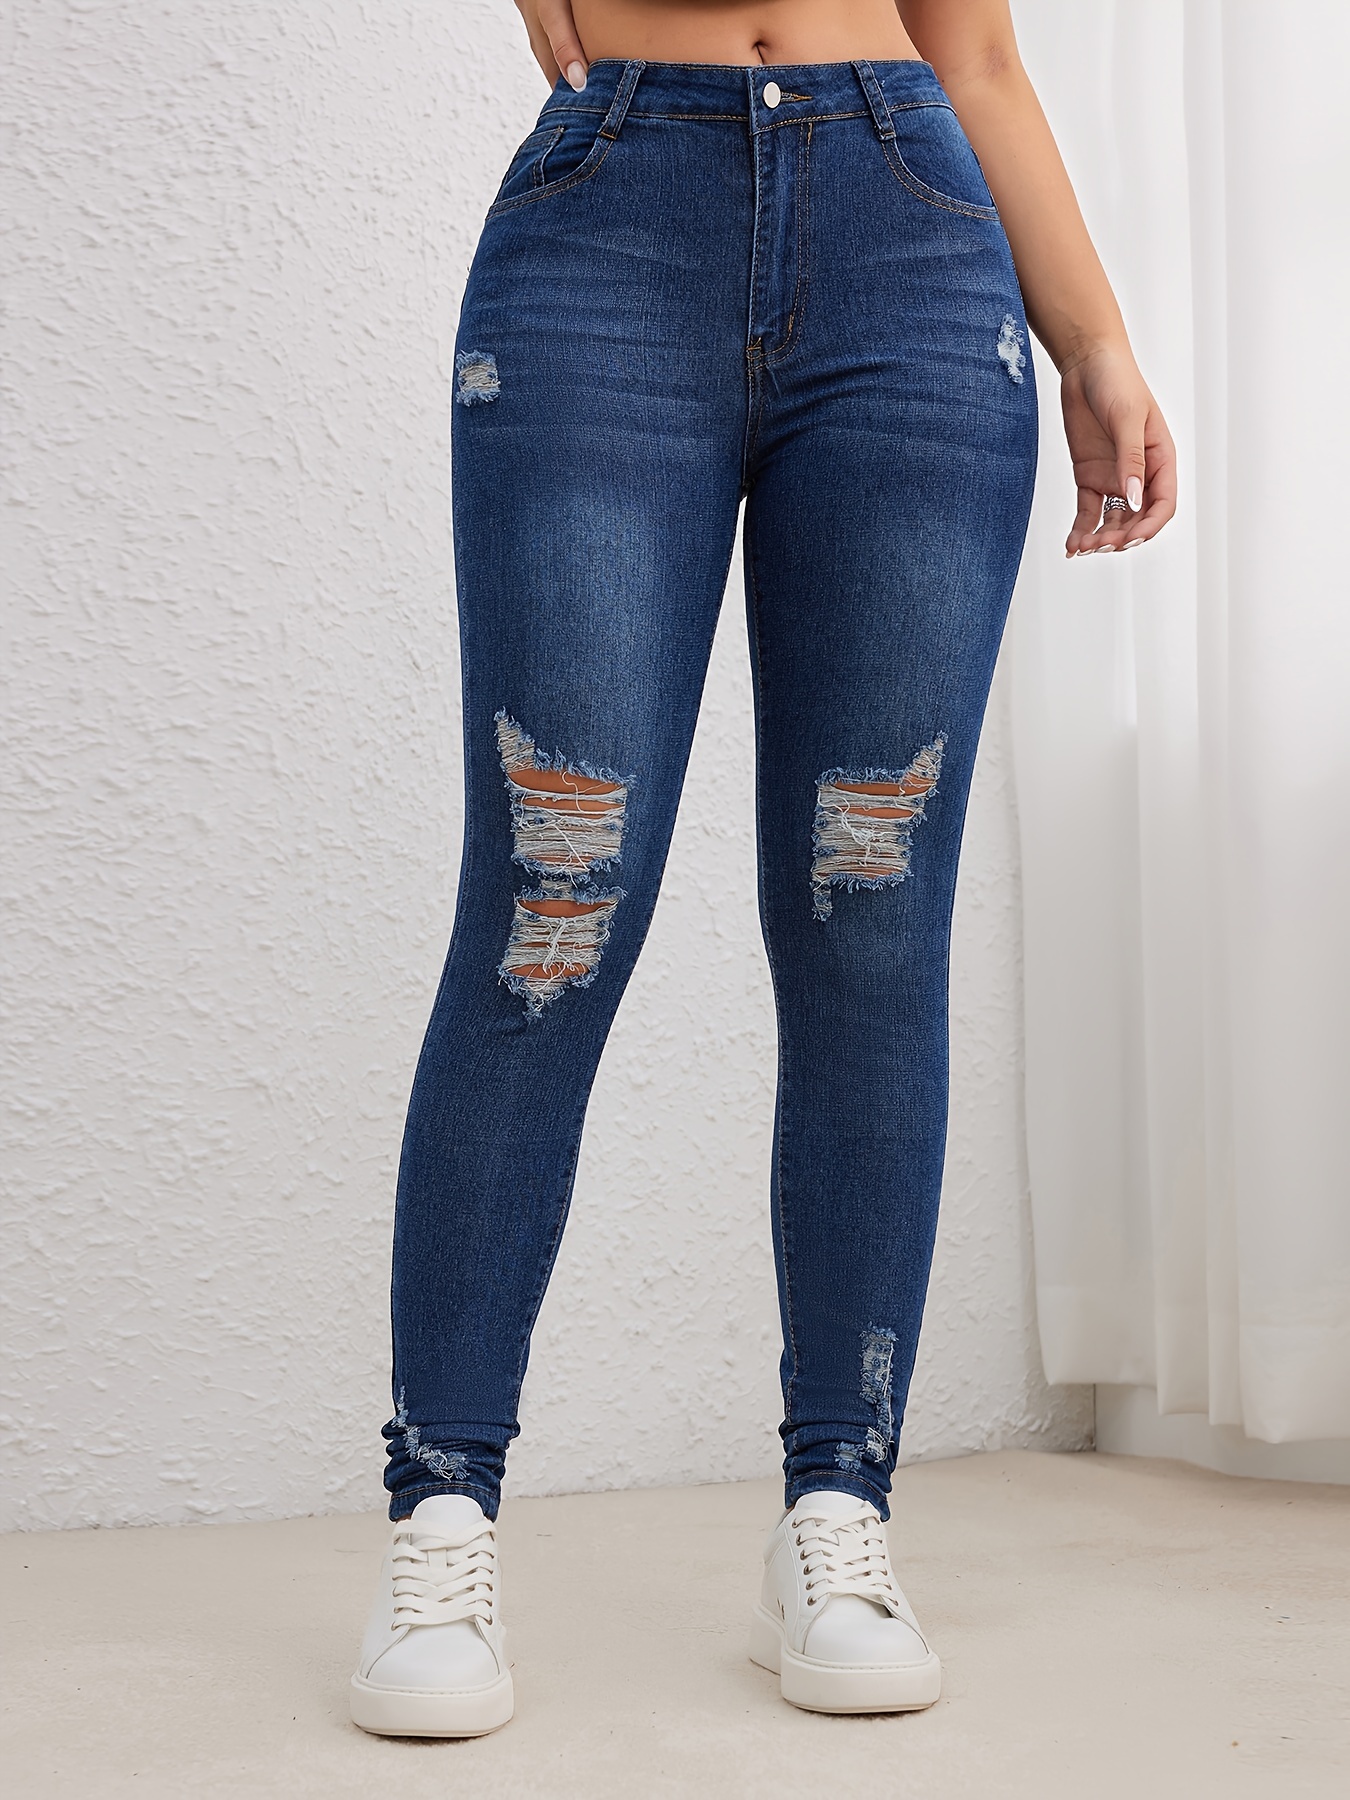 Comprar pantalones de cintura alta para mujer online